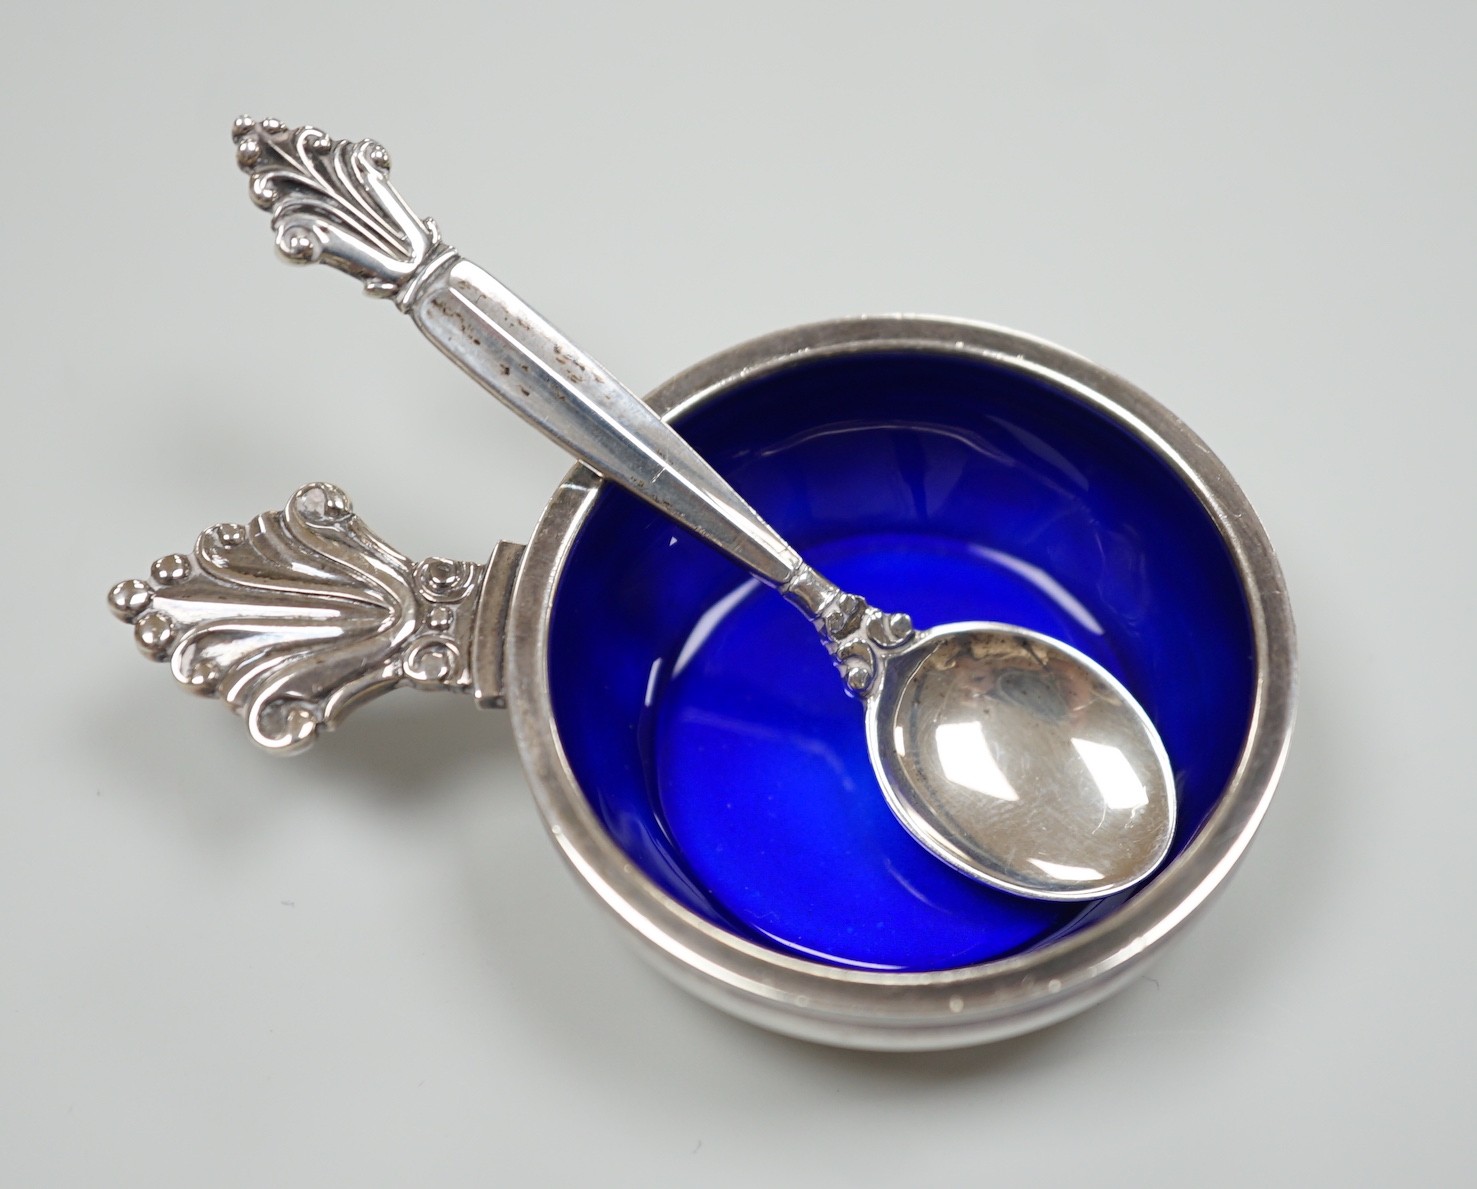 A modern Georg Jensen silver and enamel salt, design no. 180, 63mm and matching salt spoon, 64mm, gross weight 29.3 grams.                                                                                                  